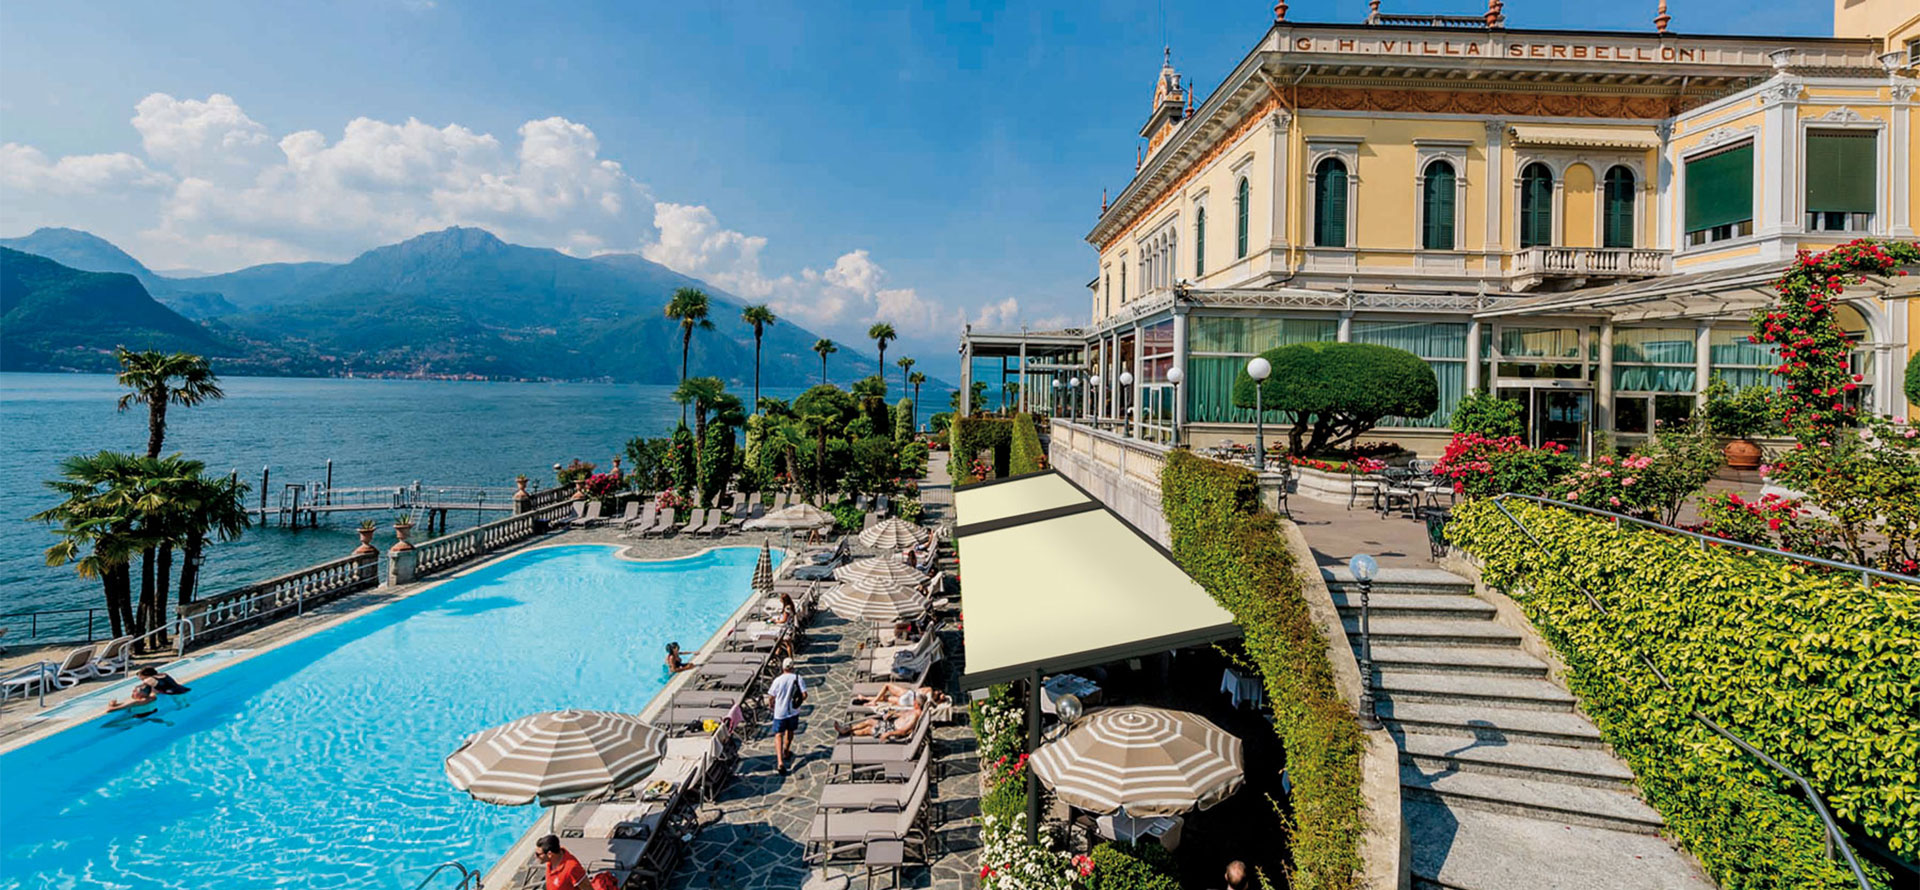 Resort in Italy.